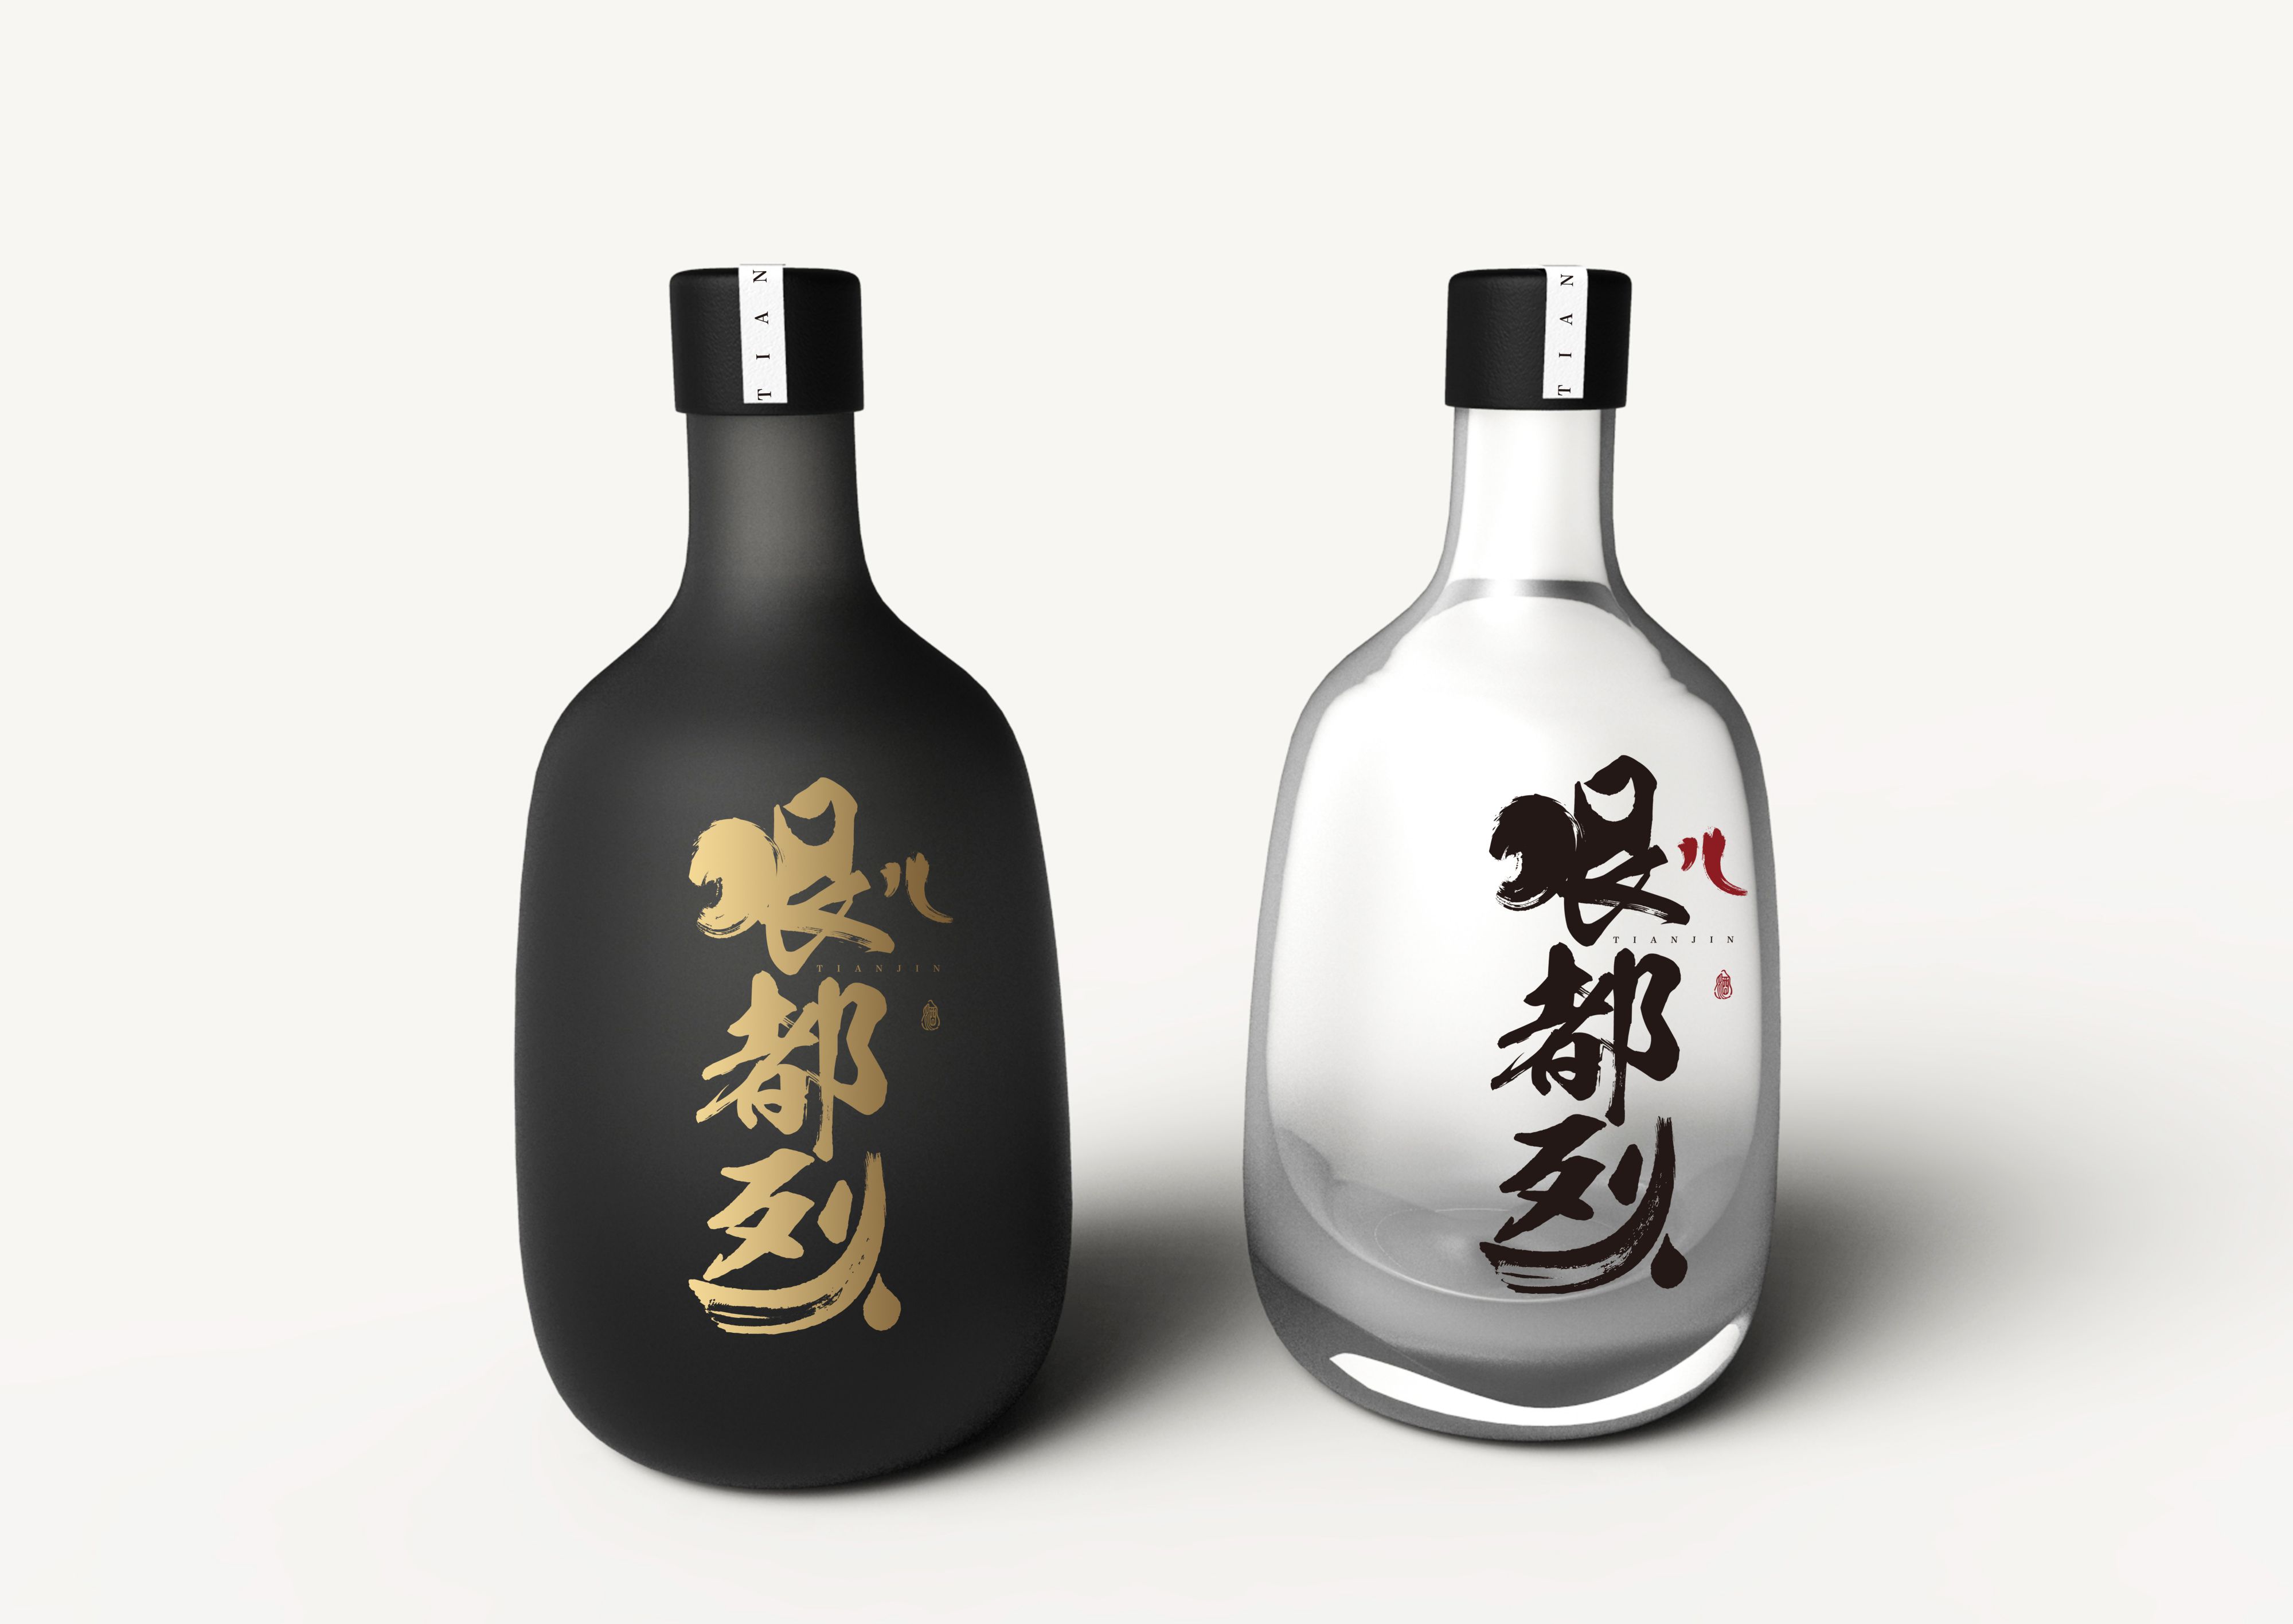 一点一创平面设计网站酒瓶型设计案例赏析 